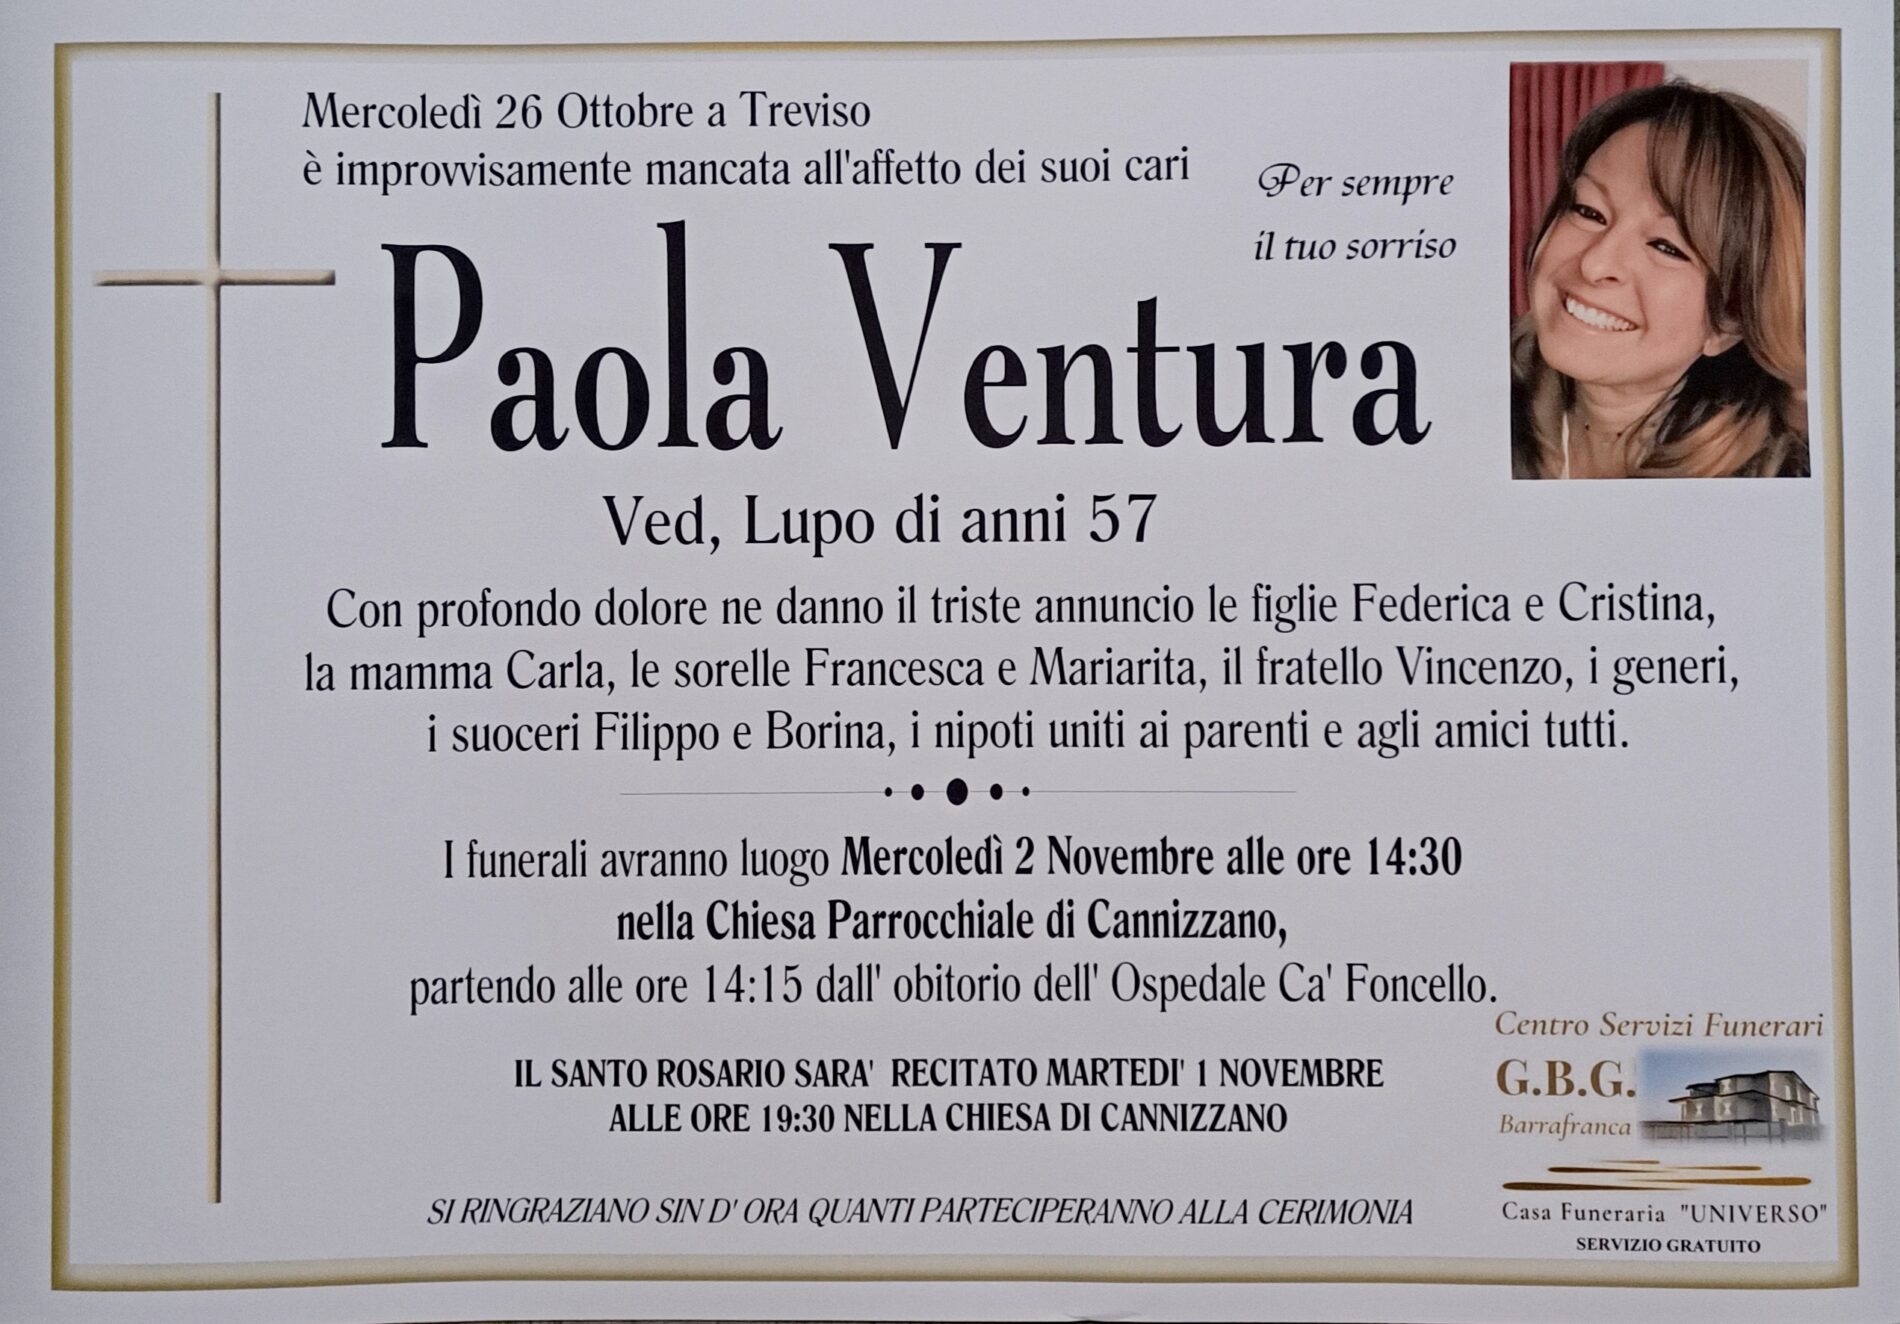 ANNUNCIO CENTRO SERVIZI FUNERARI G.B.G. Sig.ra Ventura Paola ved. Lupo di anni 57